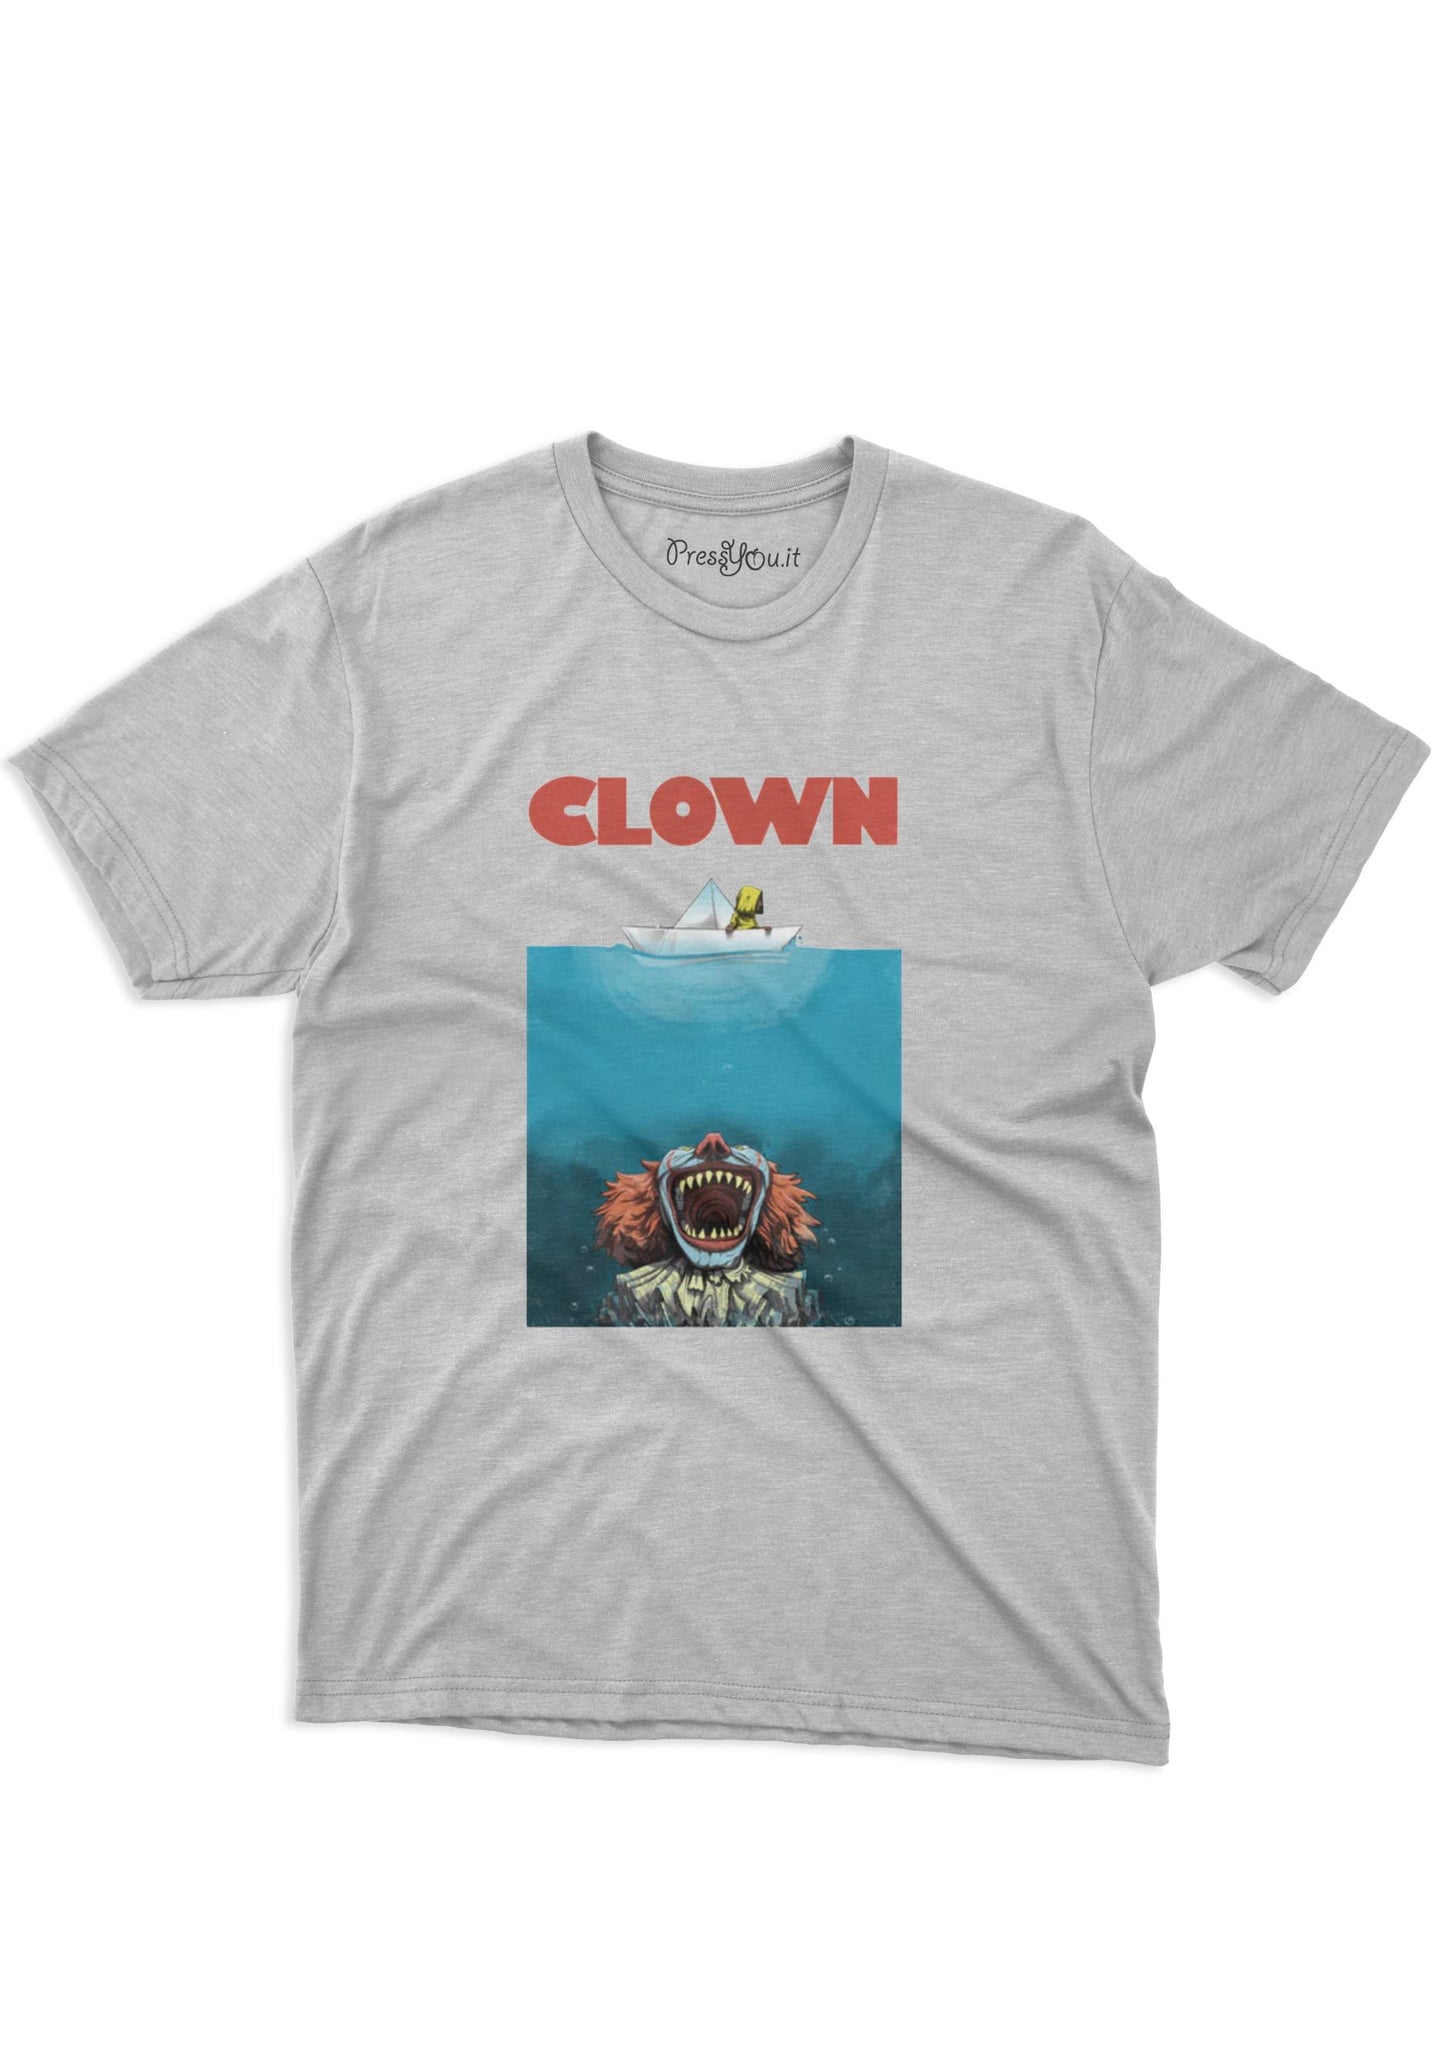 90s movie shark clown t-shirt